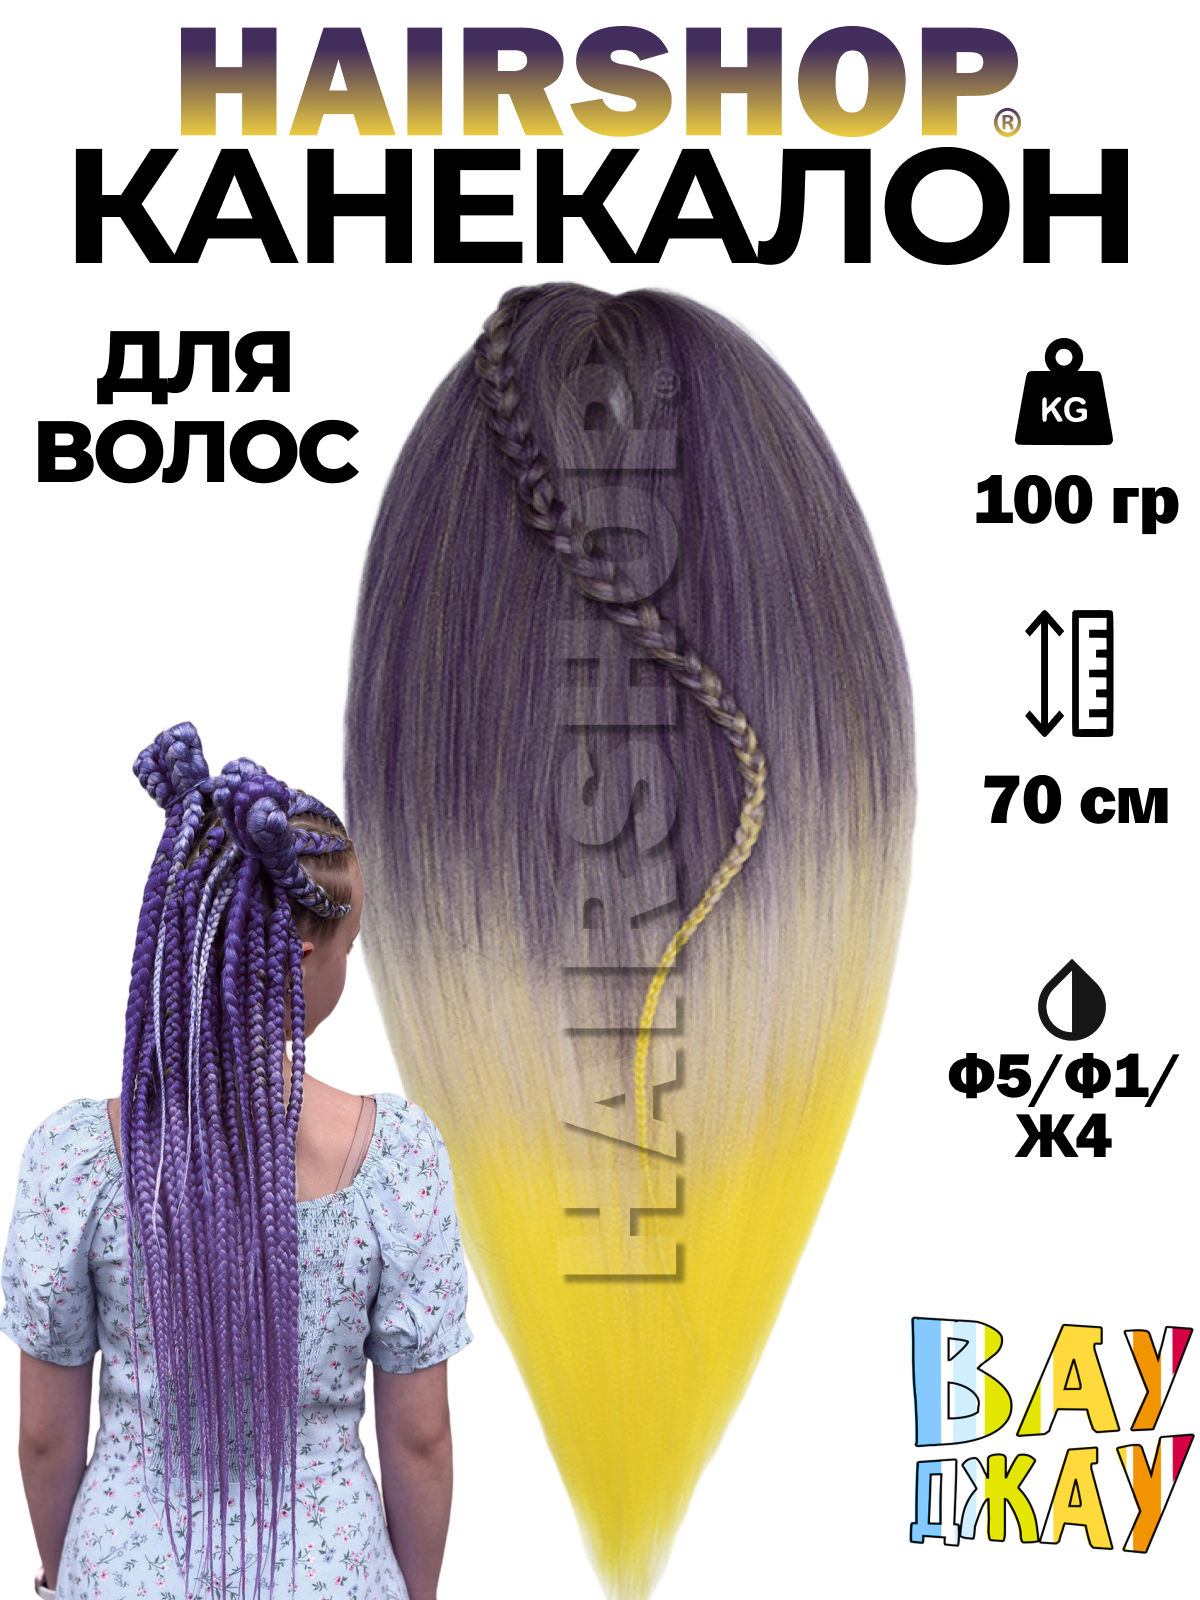 Канекалон HAIRSHOP Вау Джау Ф5-Ф1-Ж4 1,3м 100г Фиолетово-баклажановый, Фиолетовый, Желтый крем краска для волос neva natural colors 4 20 баклажановый фиолетовый